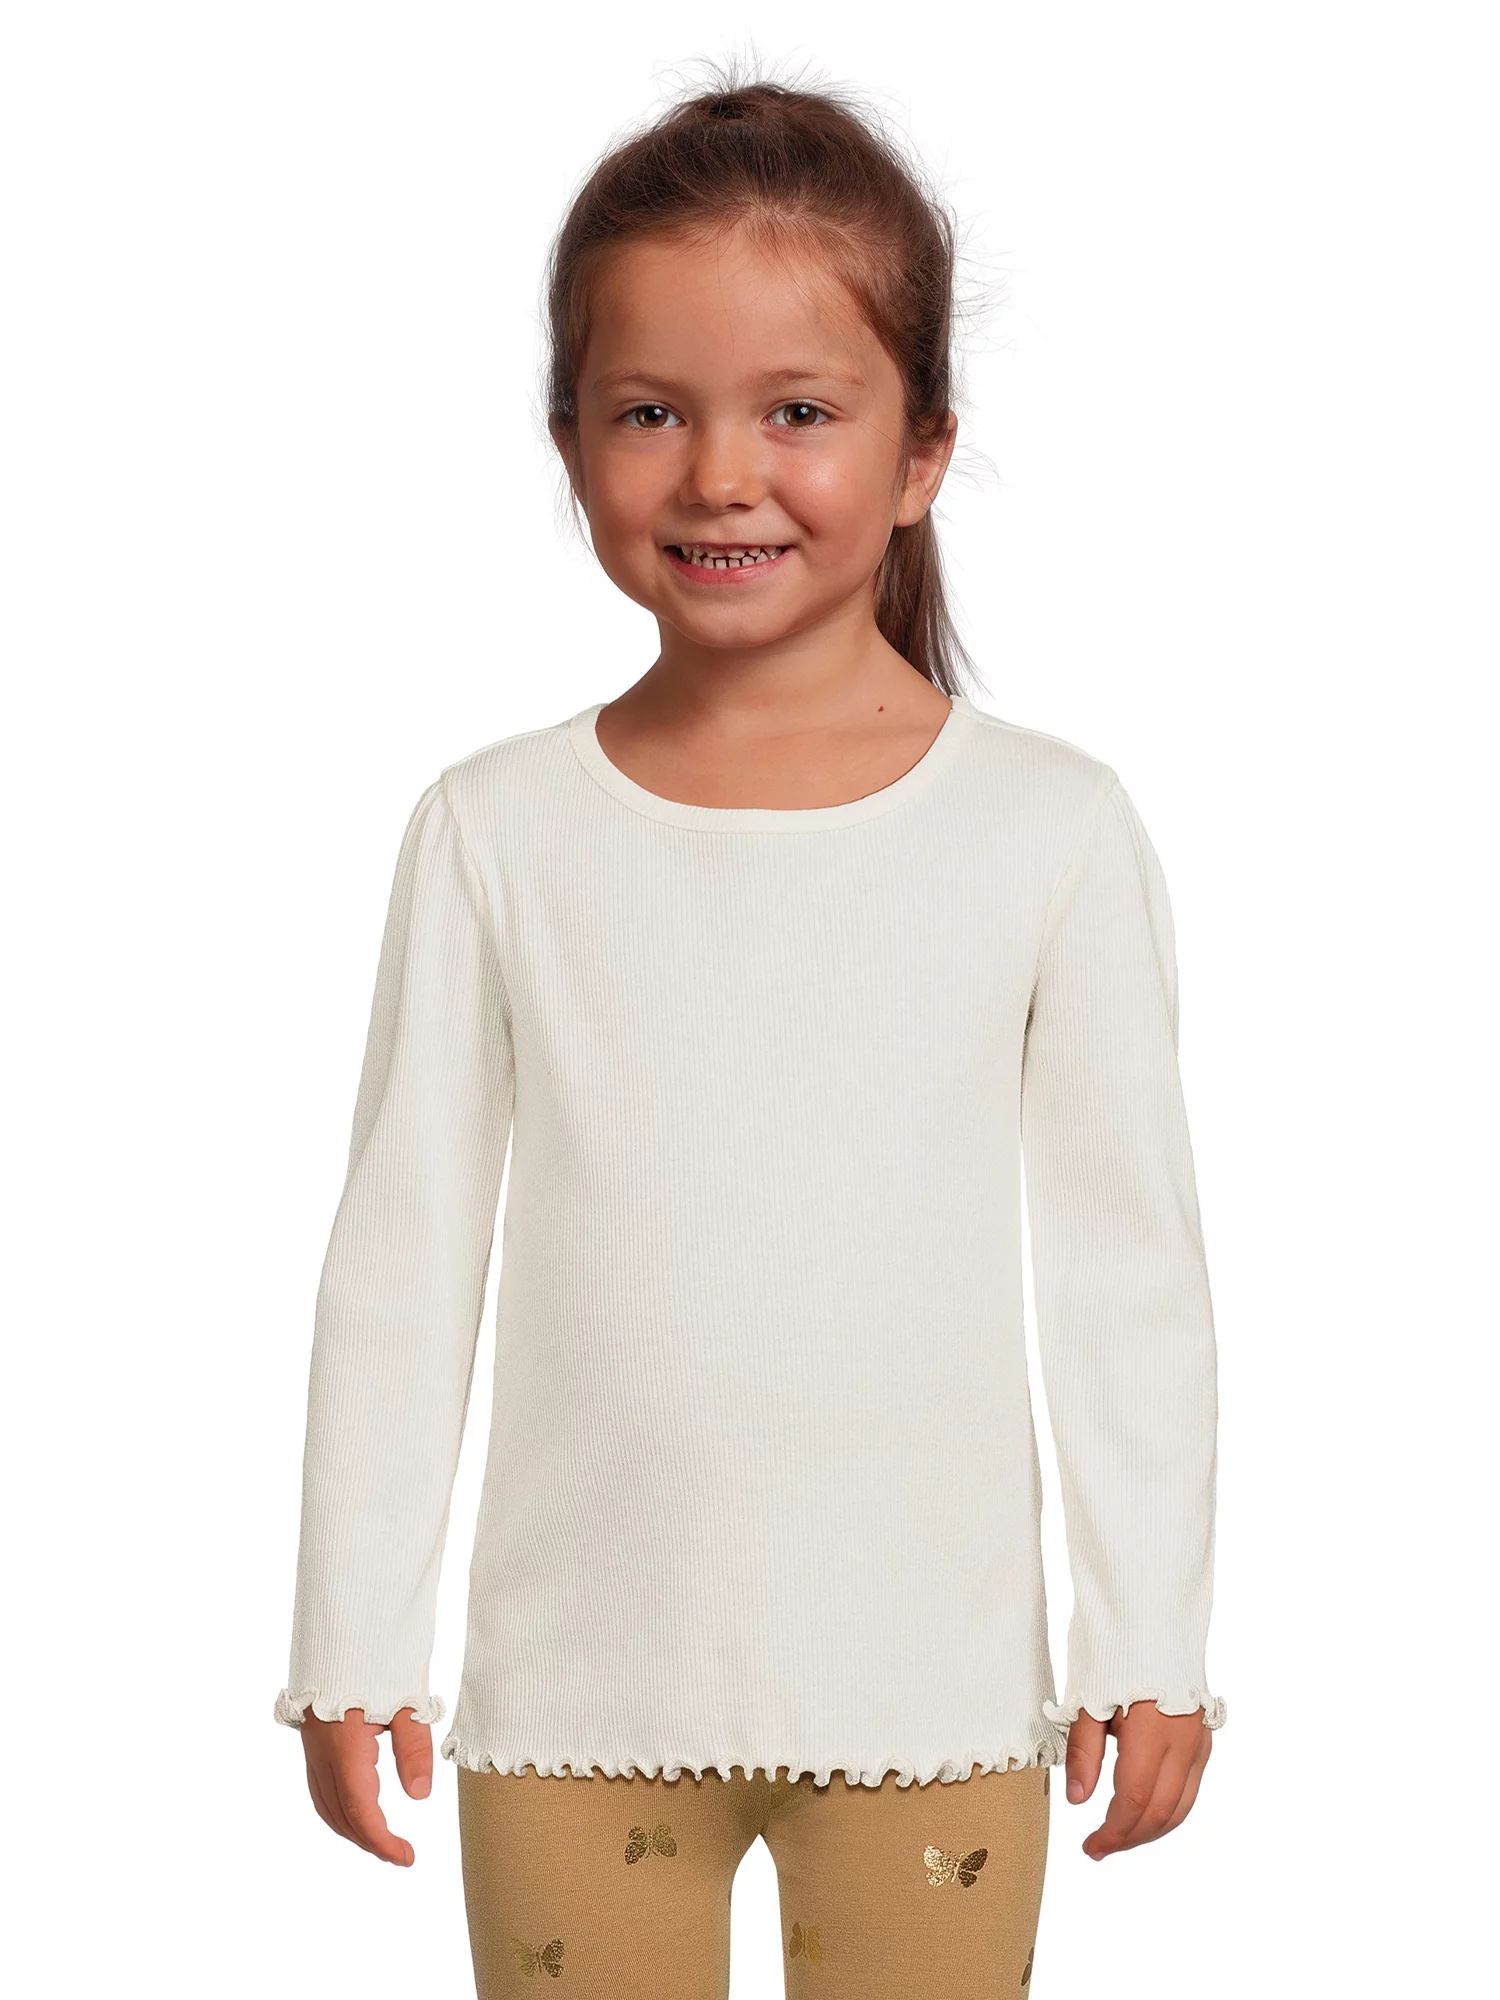 Garanimals Toddler Girl Ribbed Long Sleeve Top, Sizes 12M-5T | Walmart (US)